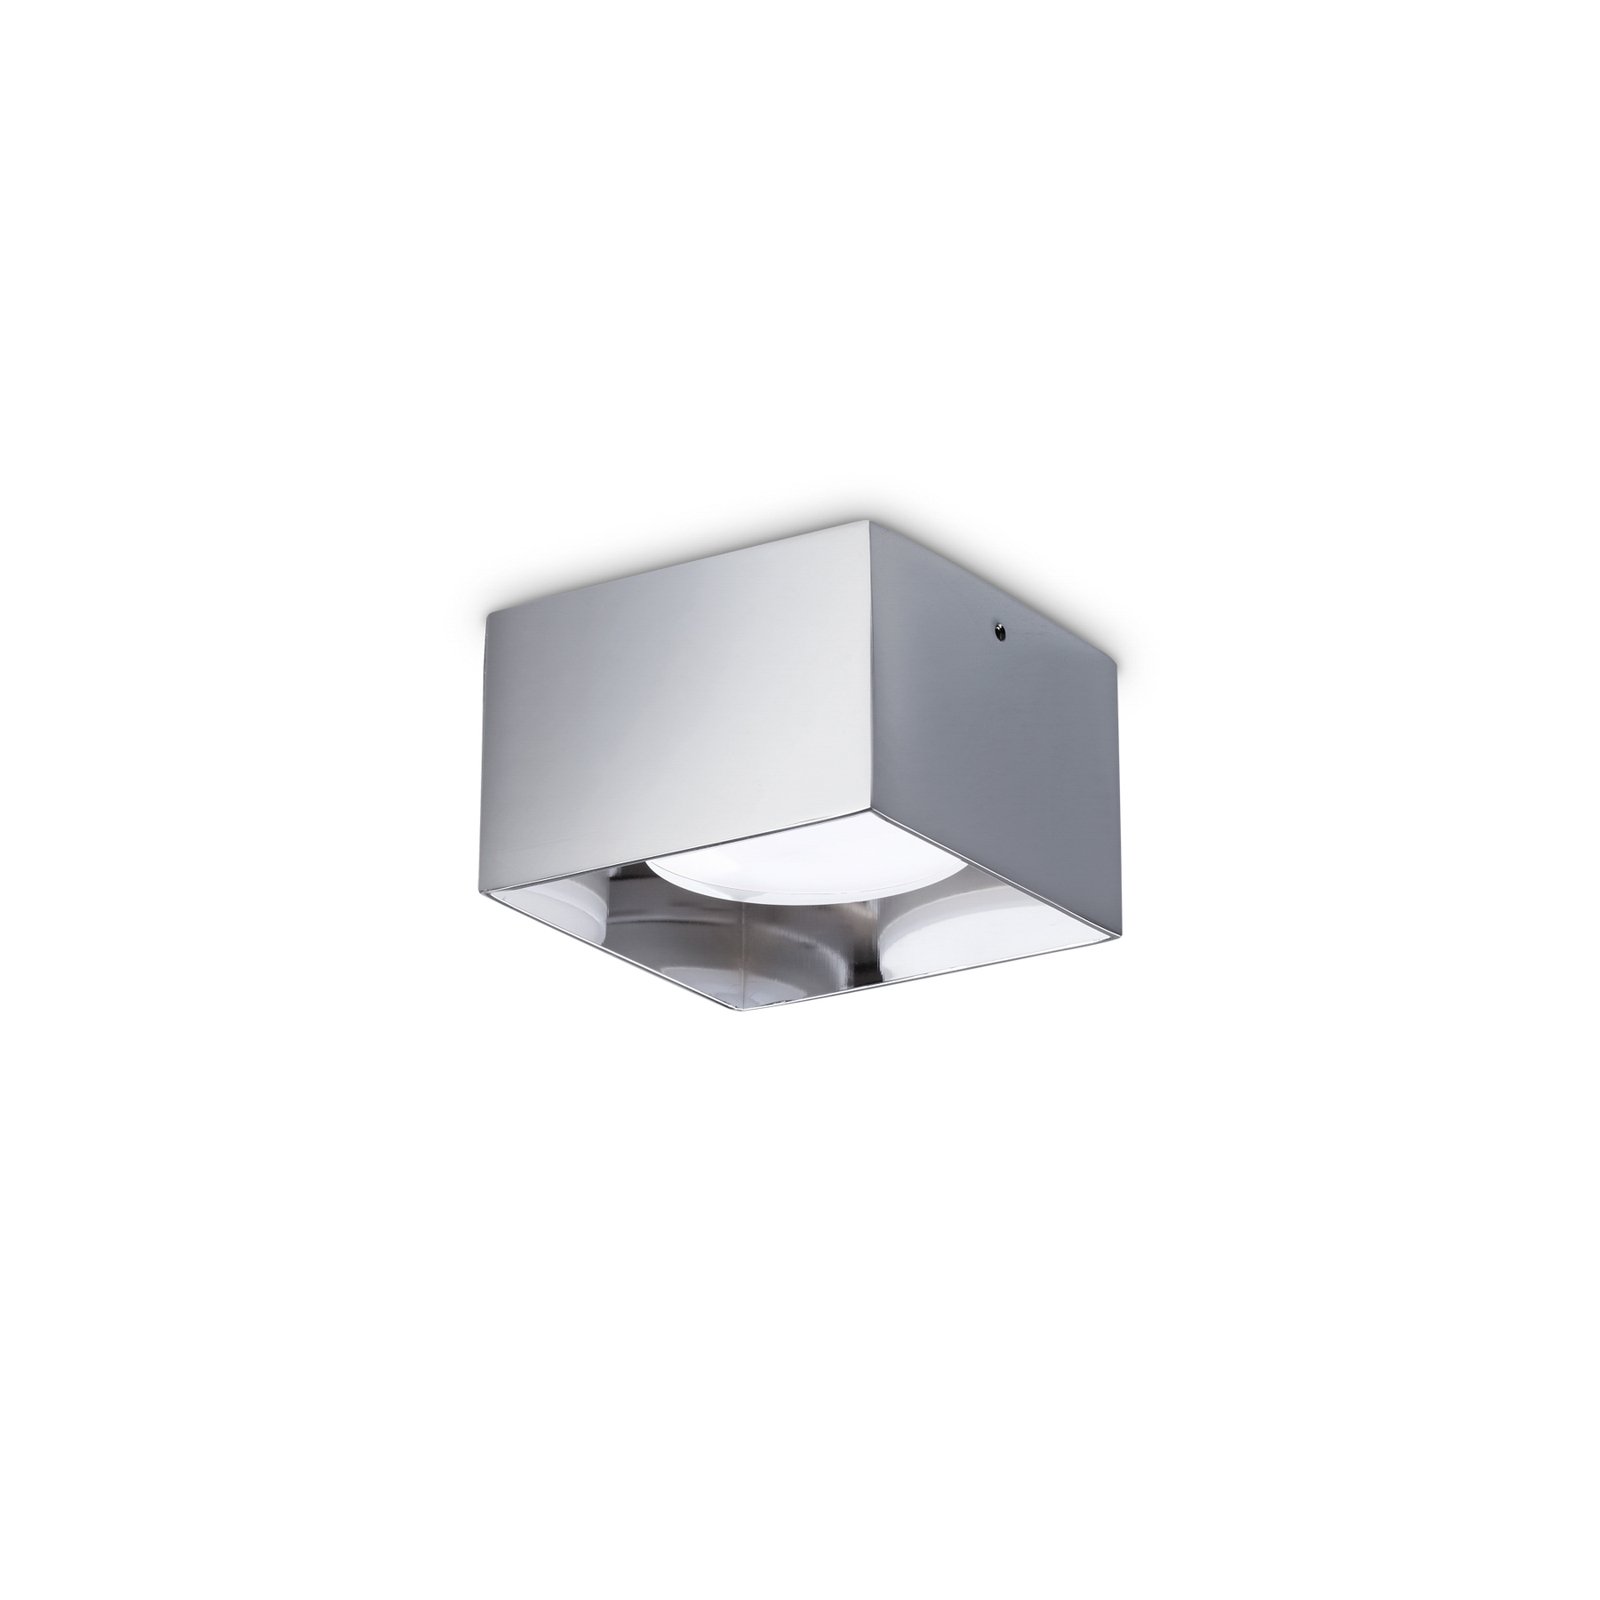 Ideal Lux ledlámpa Spike Square, króm színű, alumínium, 10x10 cm